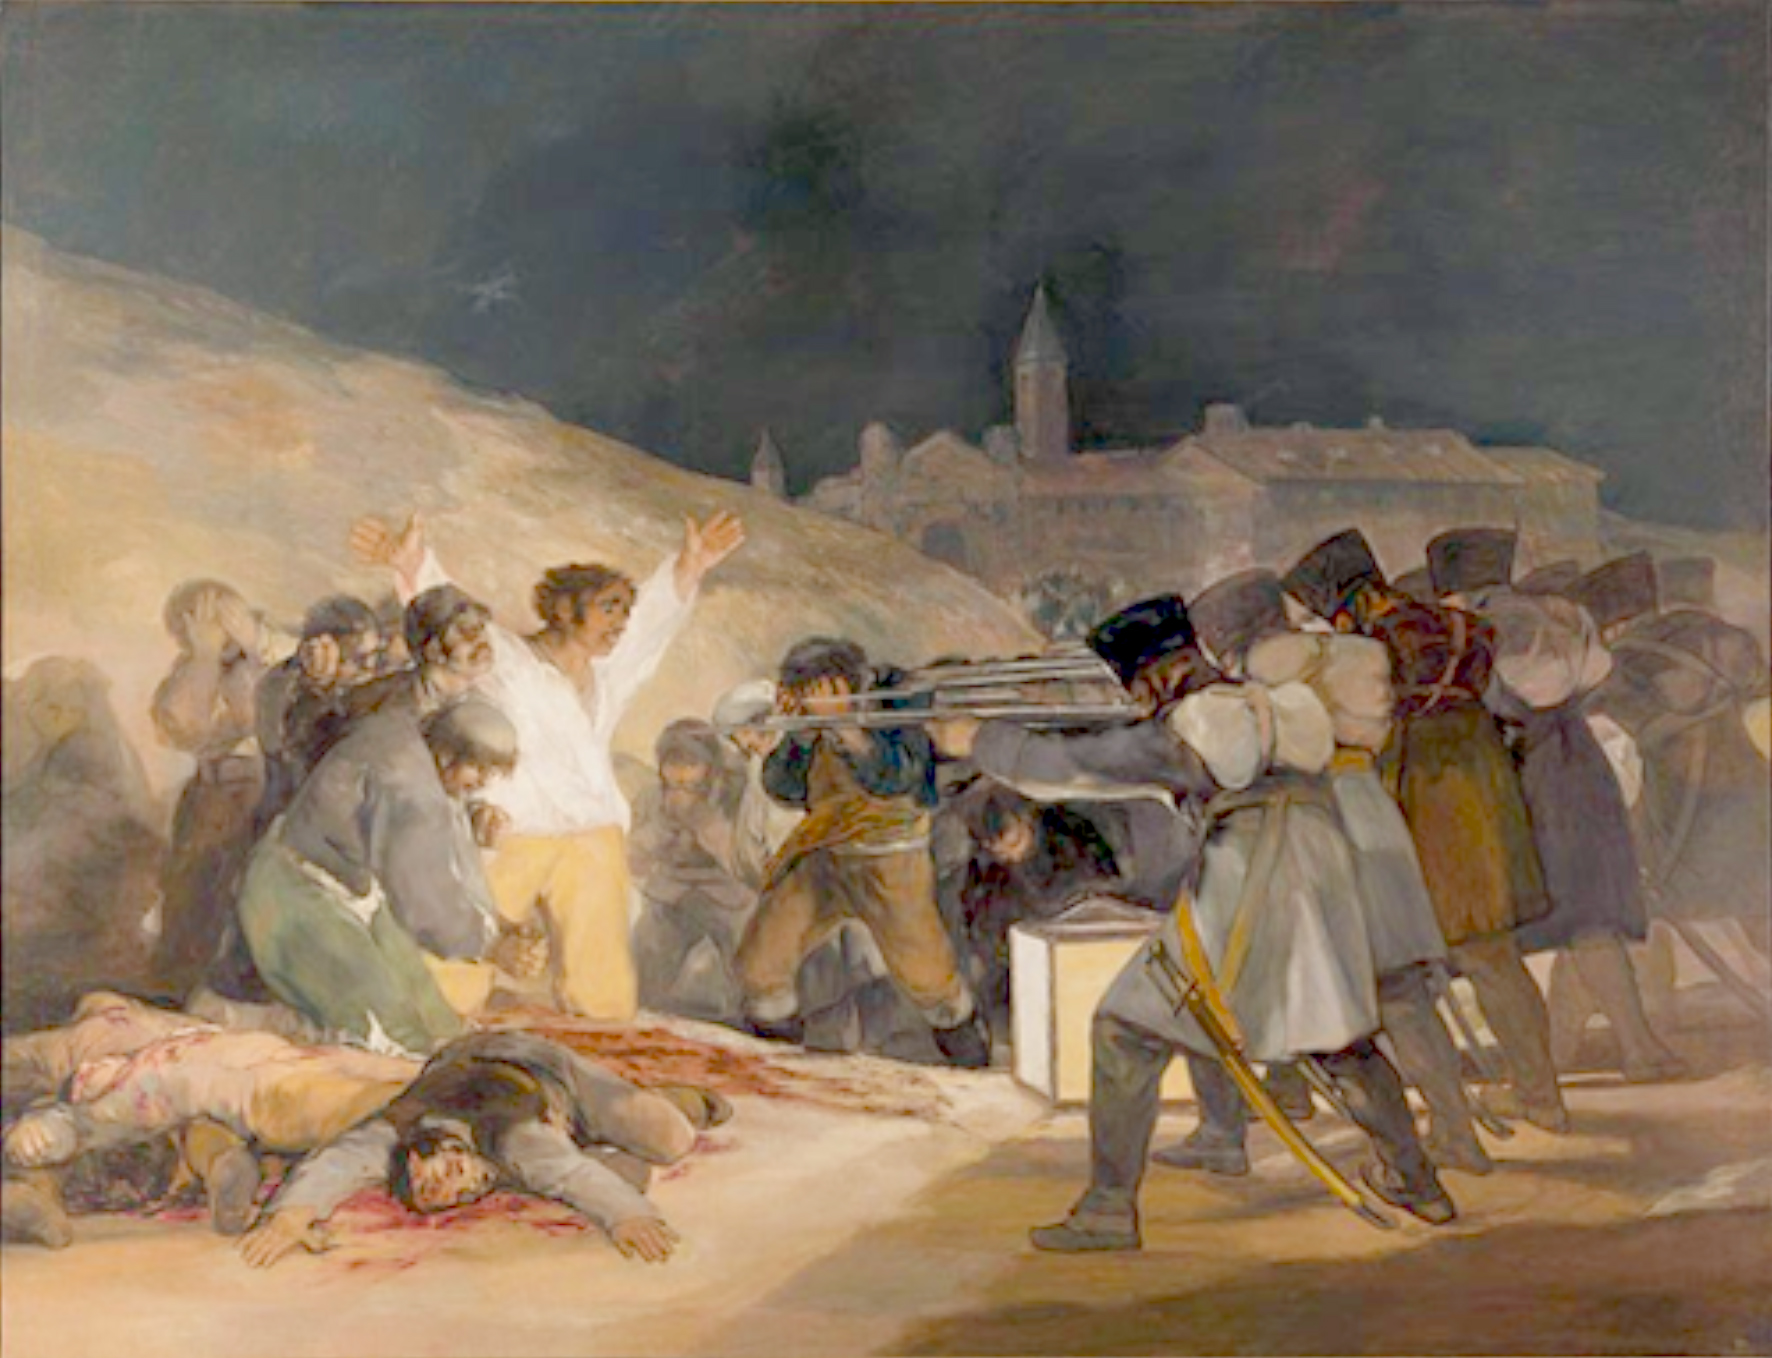 Francisco de Goya y Lucientes (1746-1828) “Los fusilamientos del 3 de Mayo” (181